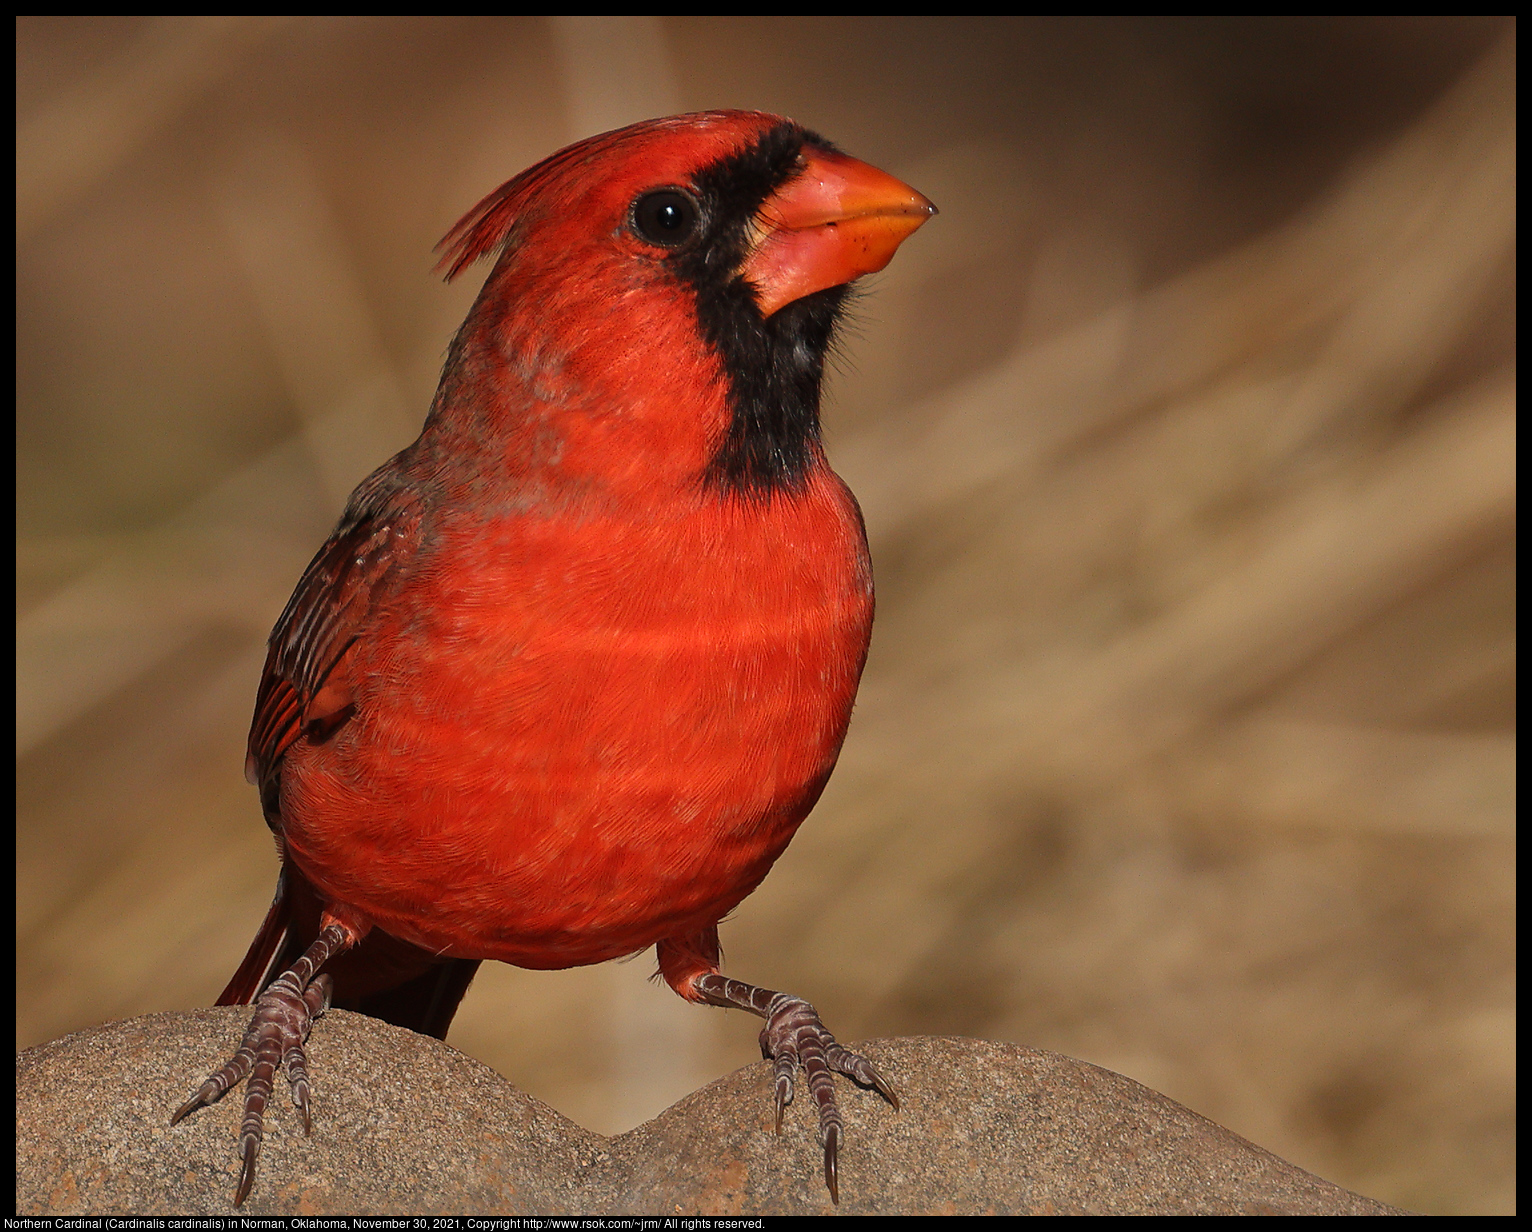 Northern Cardinal (Cardinalis cardinalis) in Norman, Oklahoma, November 30, 2021